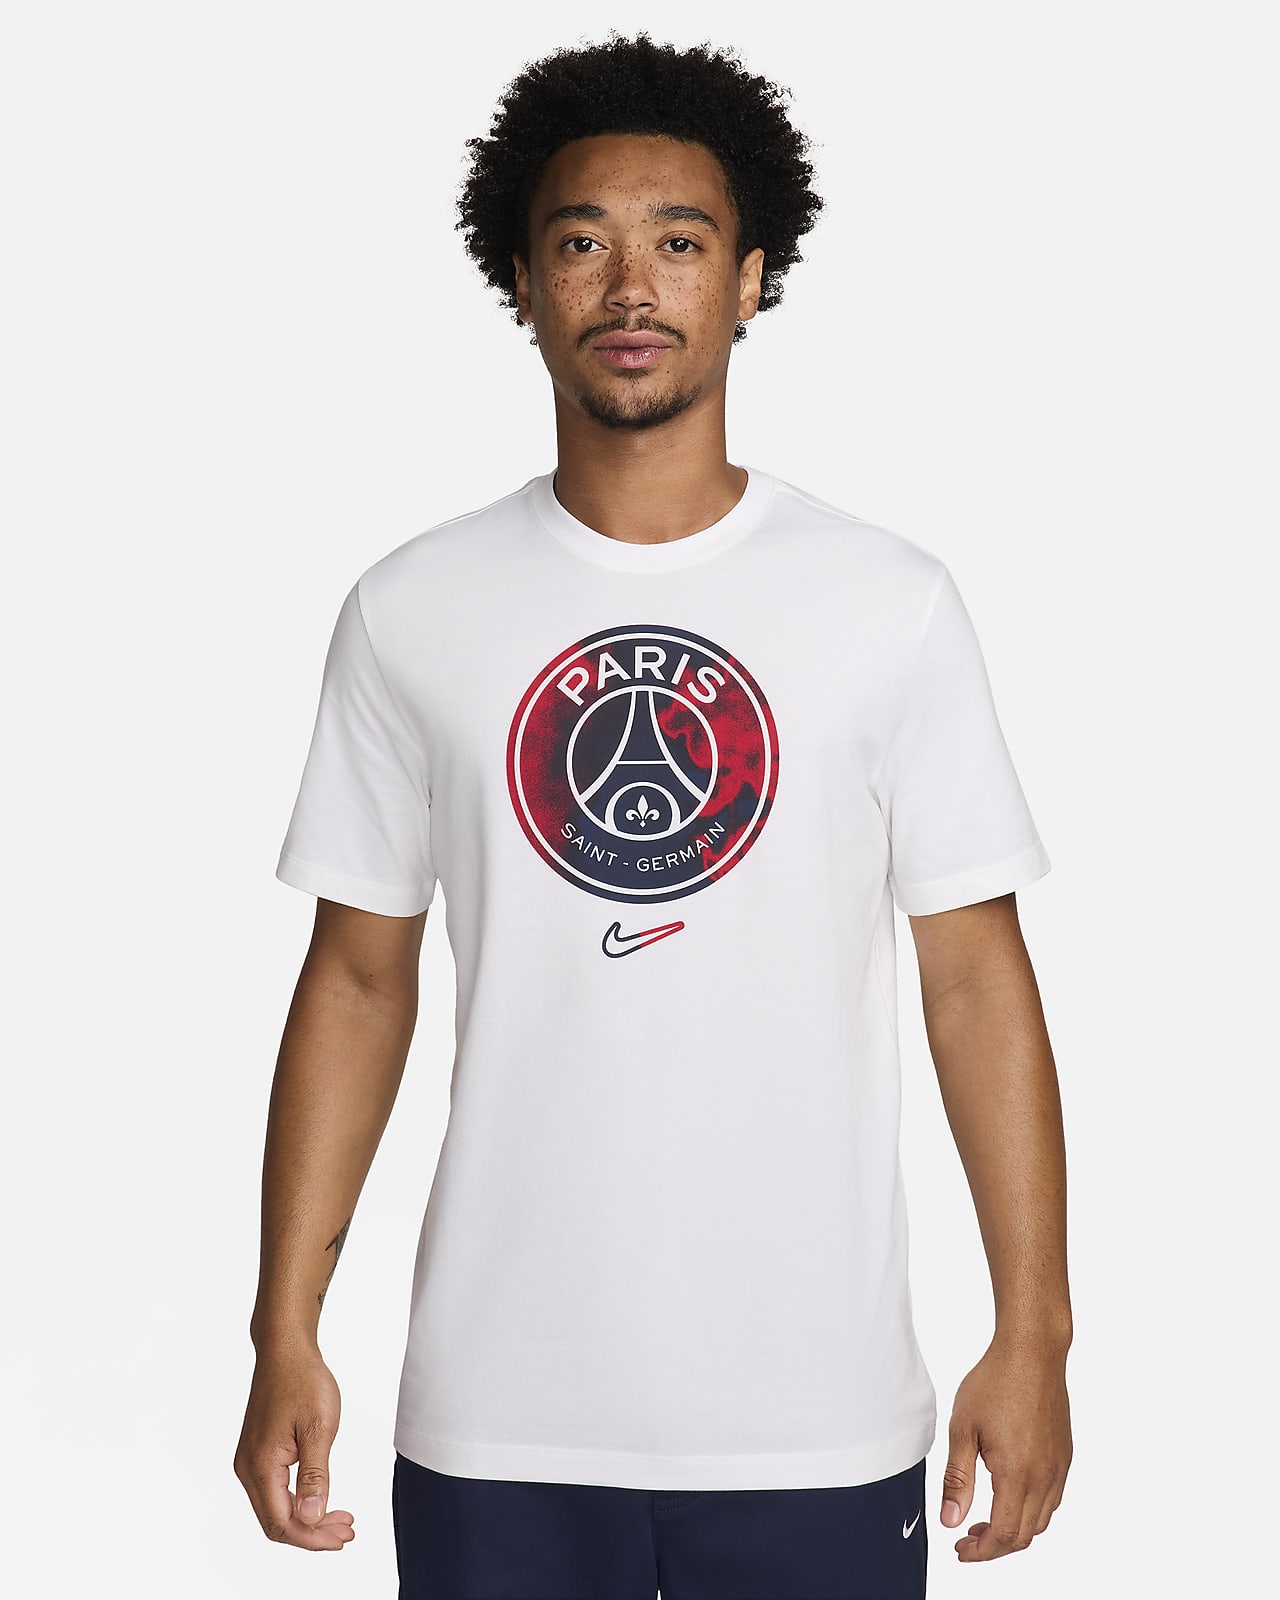 Paris Saint-Germain Men's Nike Football T-Shirt